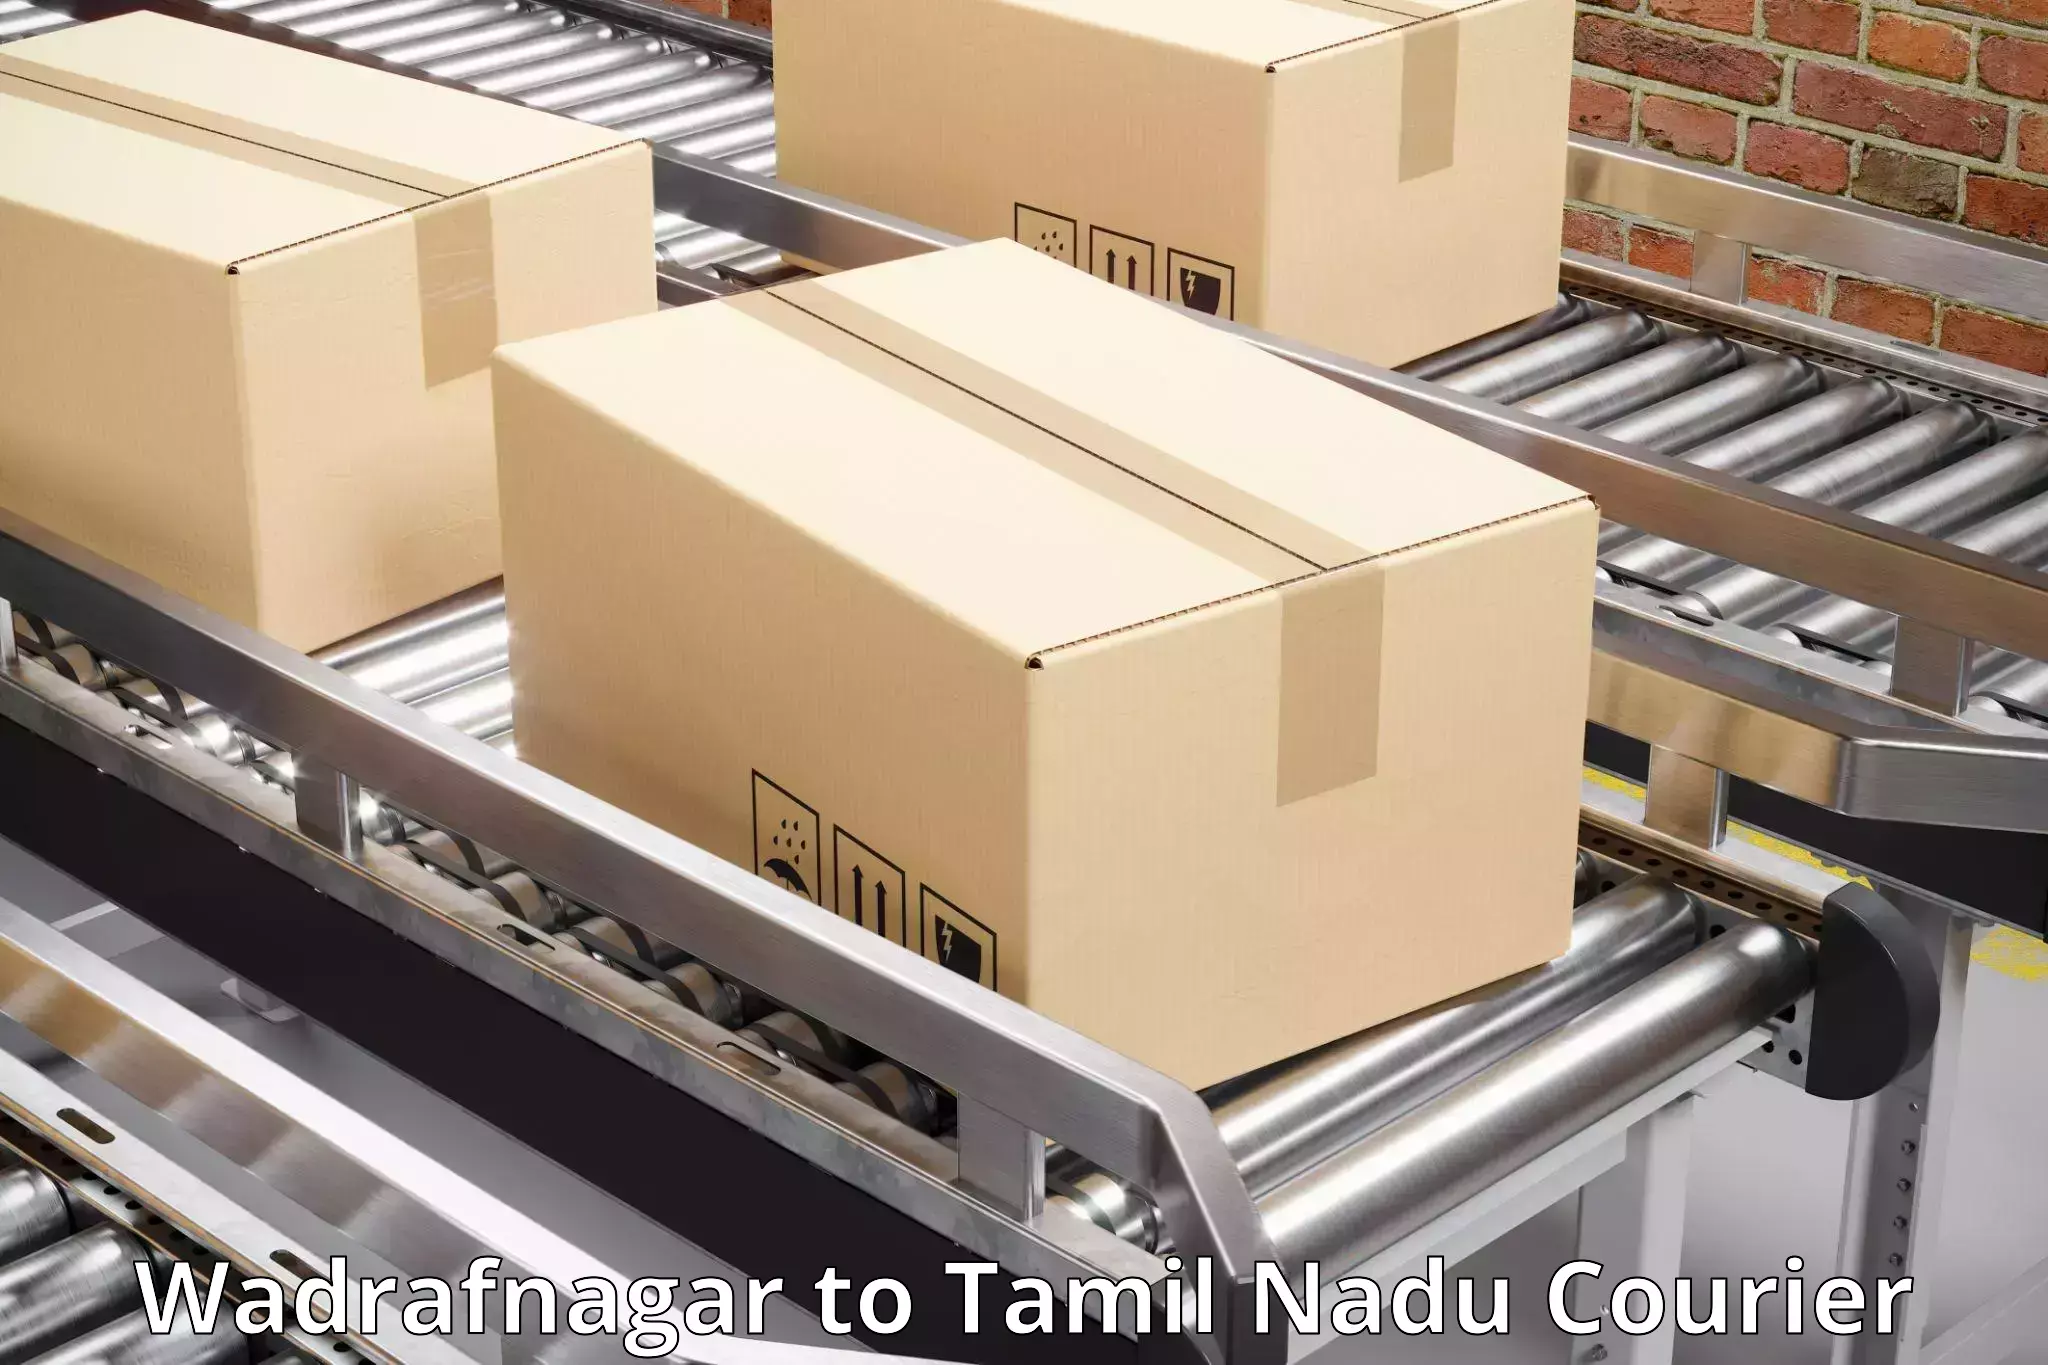 Nationwide parcel services Wadrafnagar to NIT Tiruchirapalli